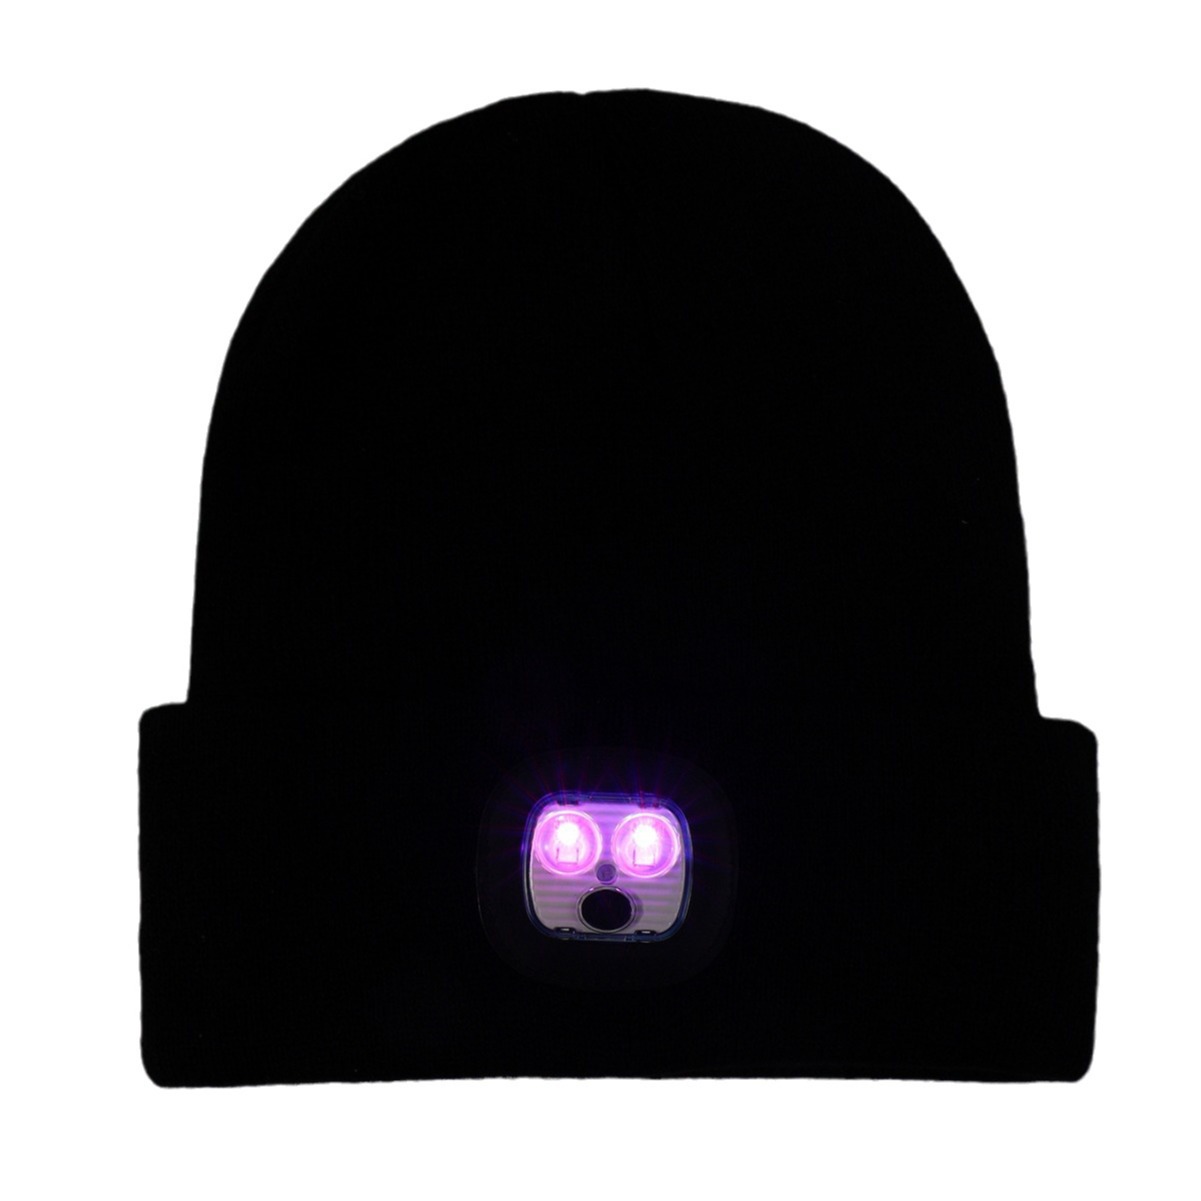 Hot Selling Custom 100% Acrylic Hat Winter LED Light Up Beanie, Fashion Wholesale Led Beanie Hat